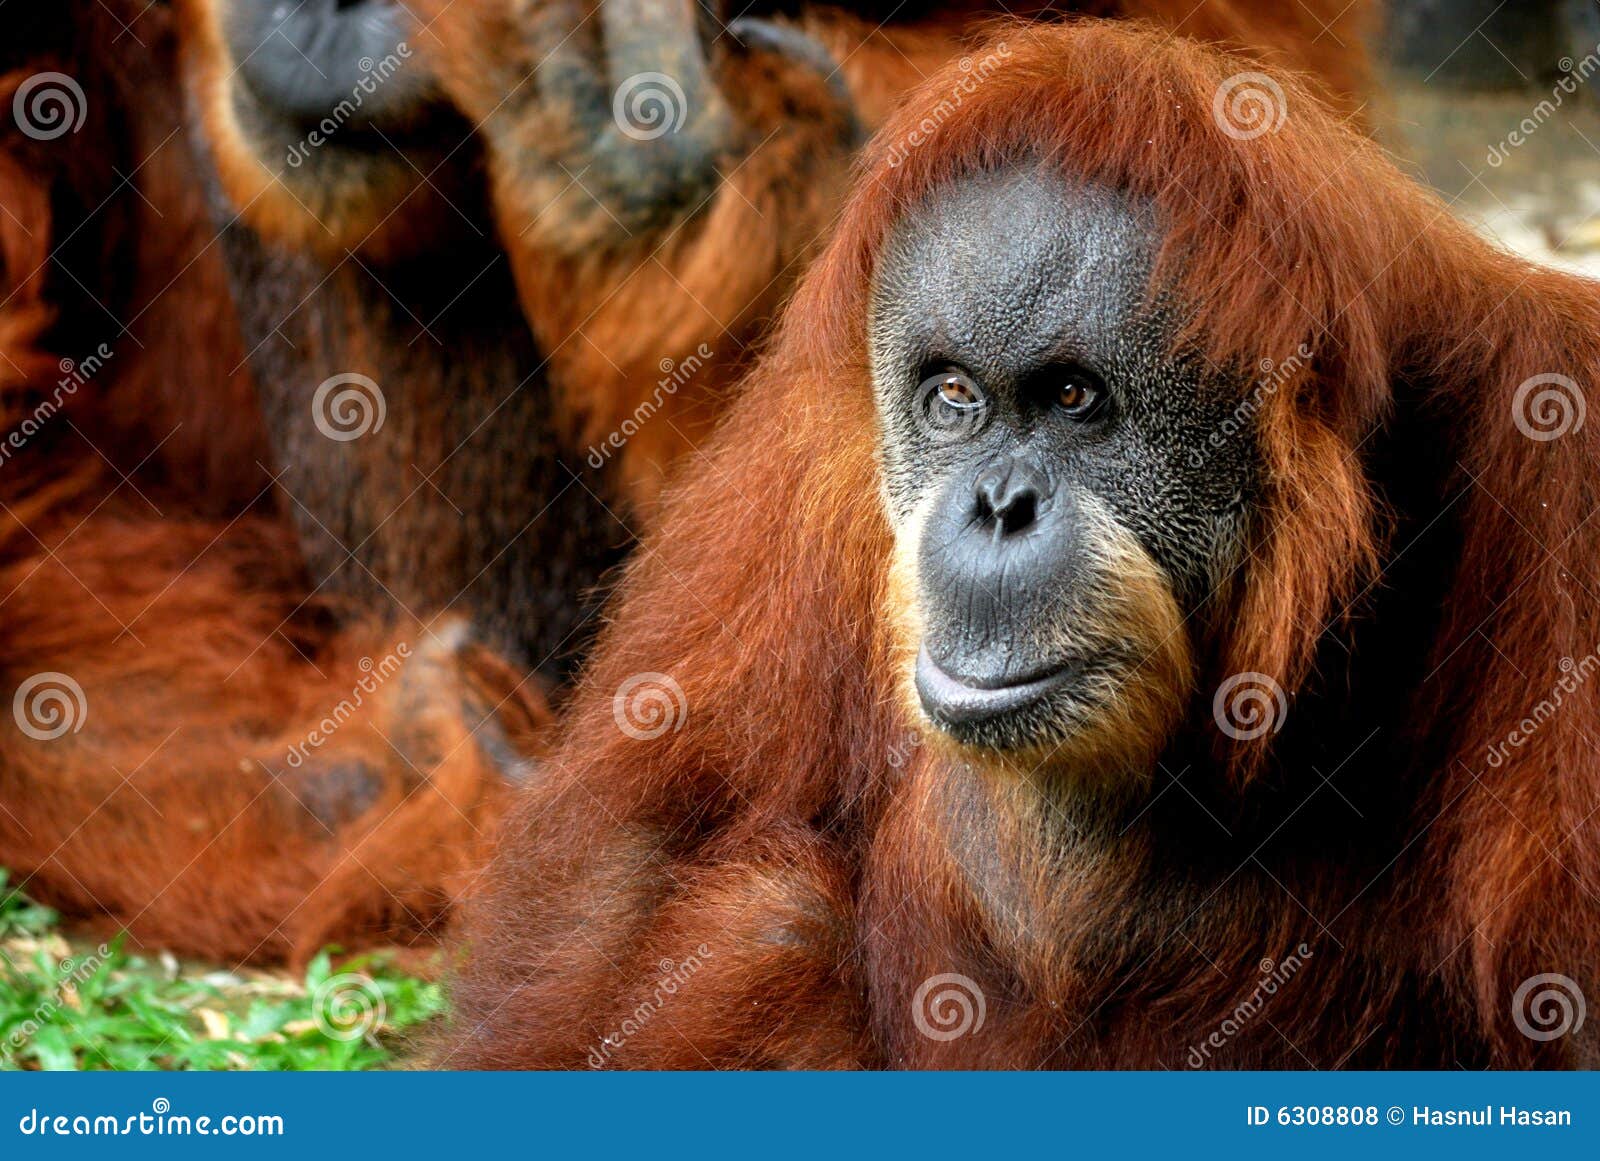 orangutan focused